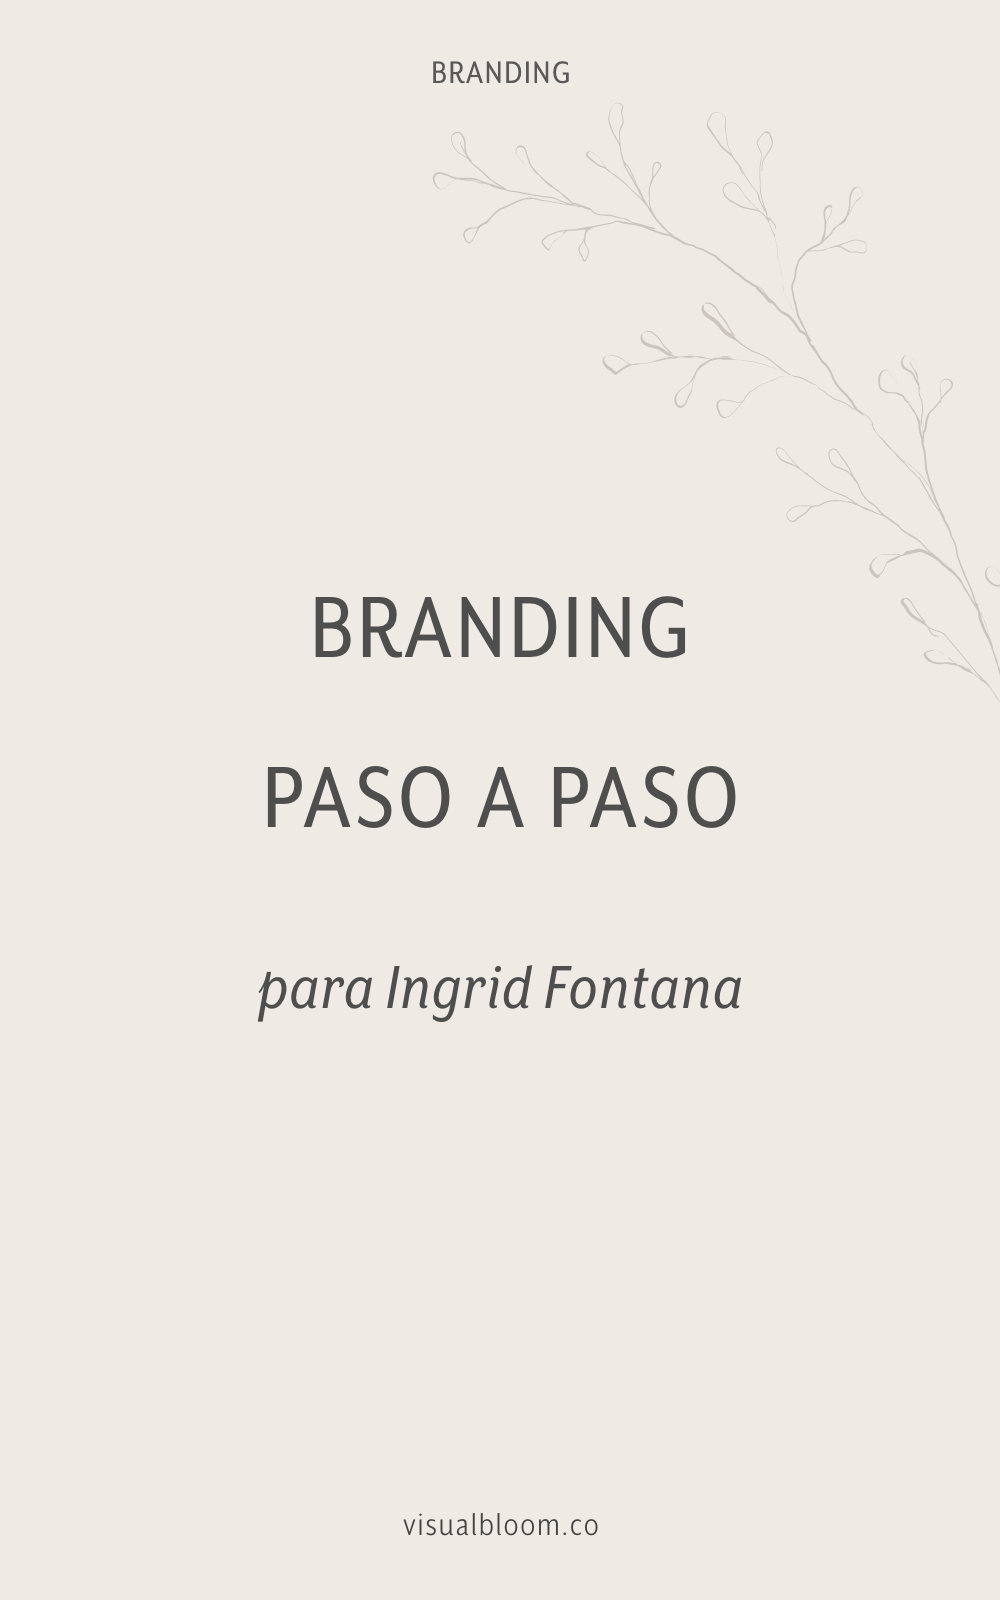  En este post te desvelo el proceso de diseño detrás del diseño de identidad corporativa para Ingrid Fontana. #DiseñoIdentidad #branding #emprendimiento #blogger #negociosonline #logo #MarcaPersonal 